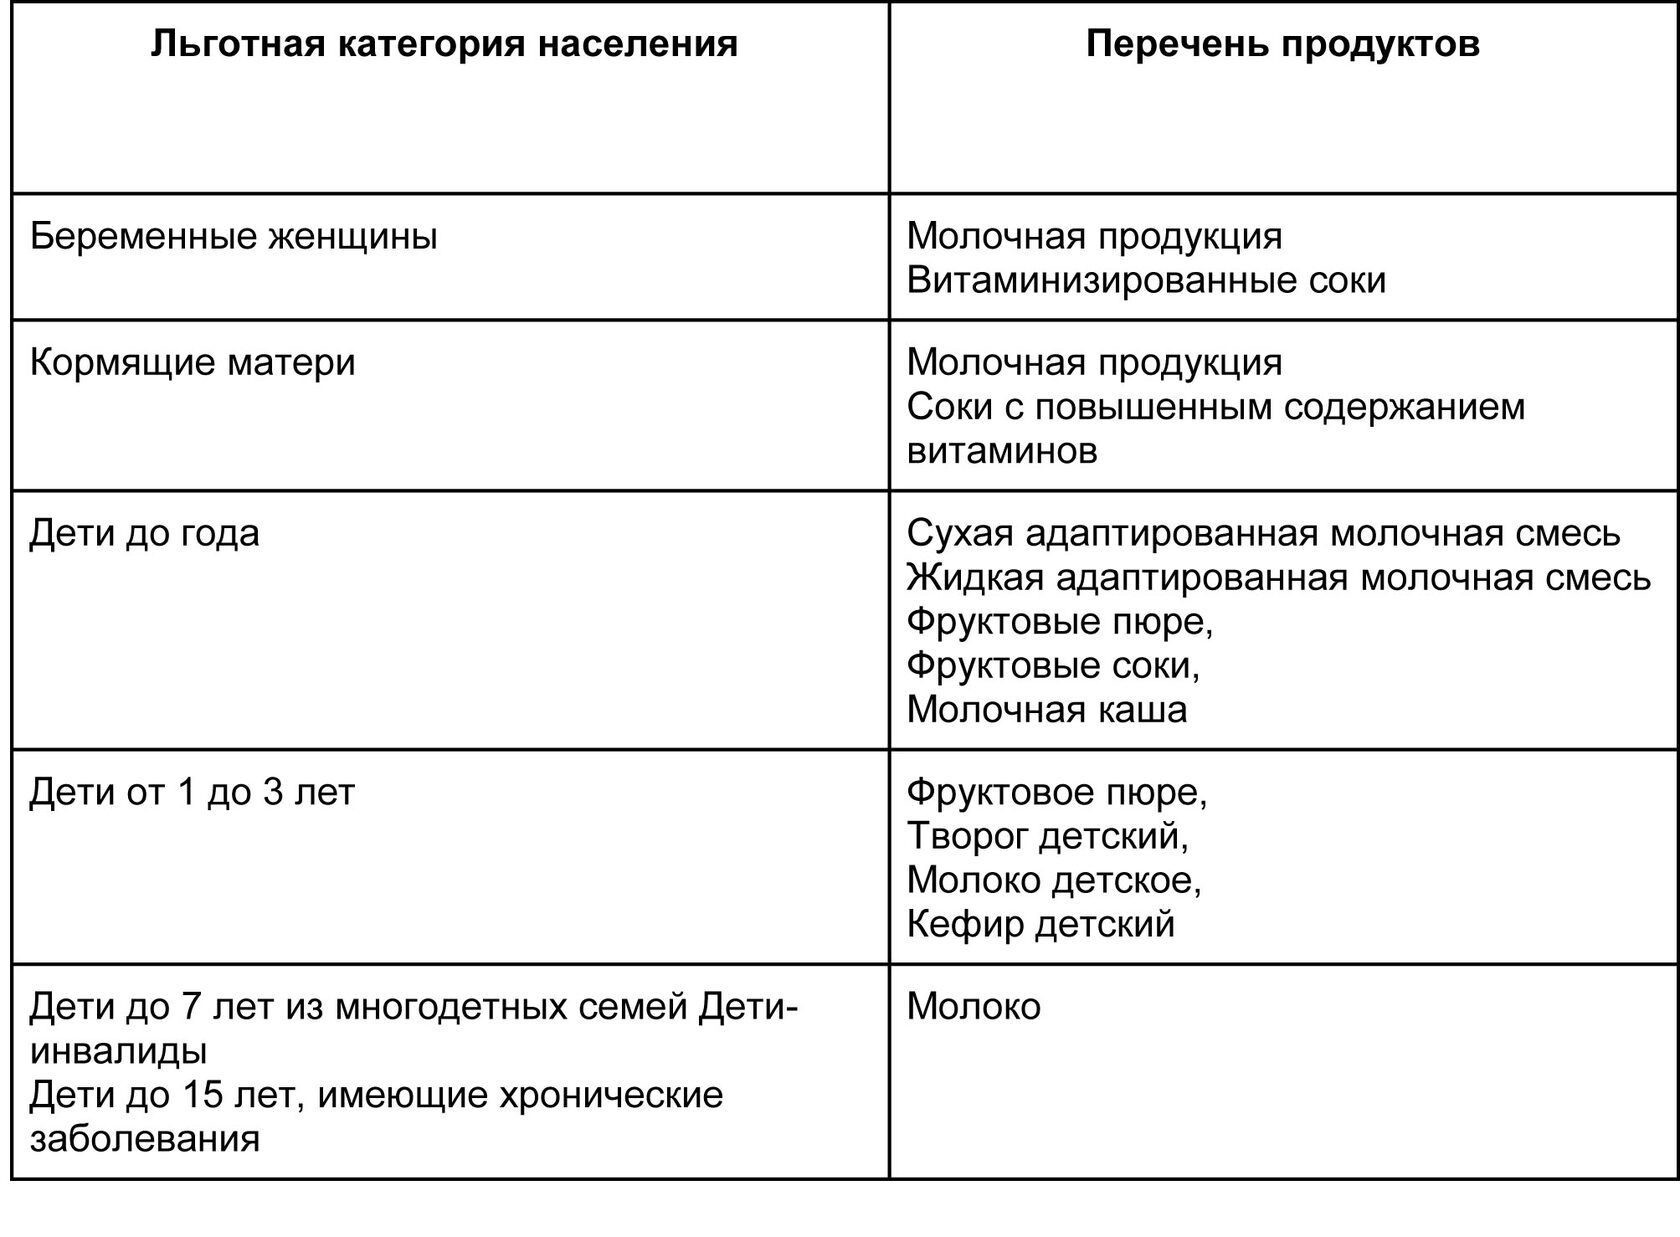 Набор и количество бесплатных товаров для детей и женщин в Екатеринбурге